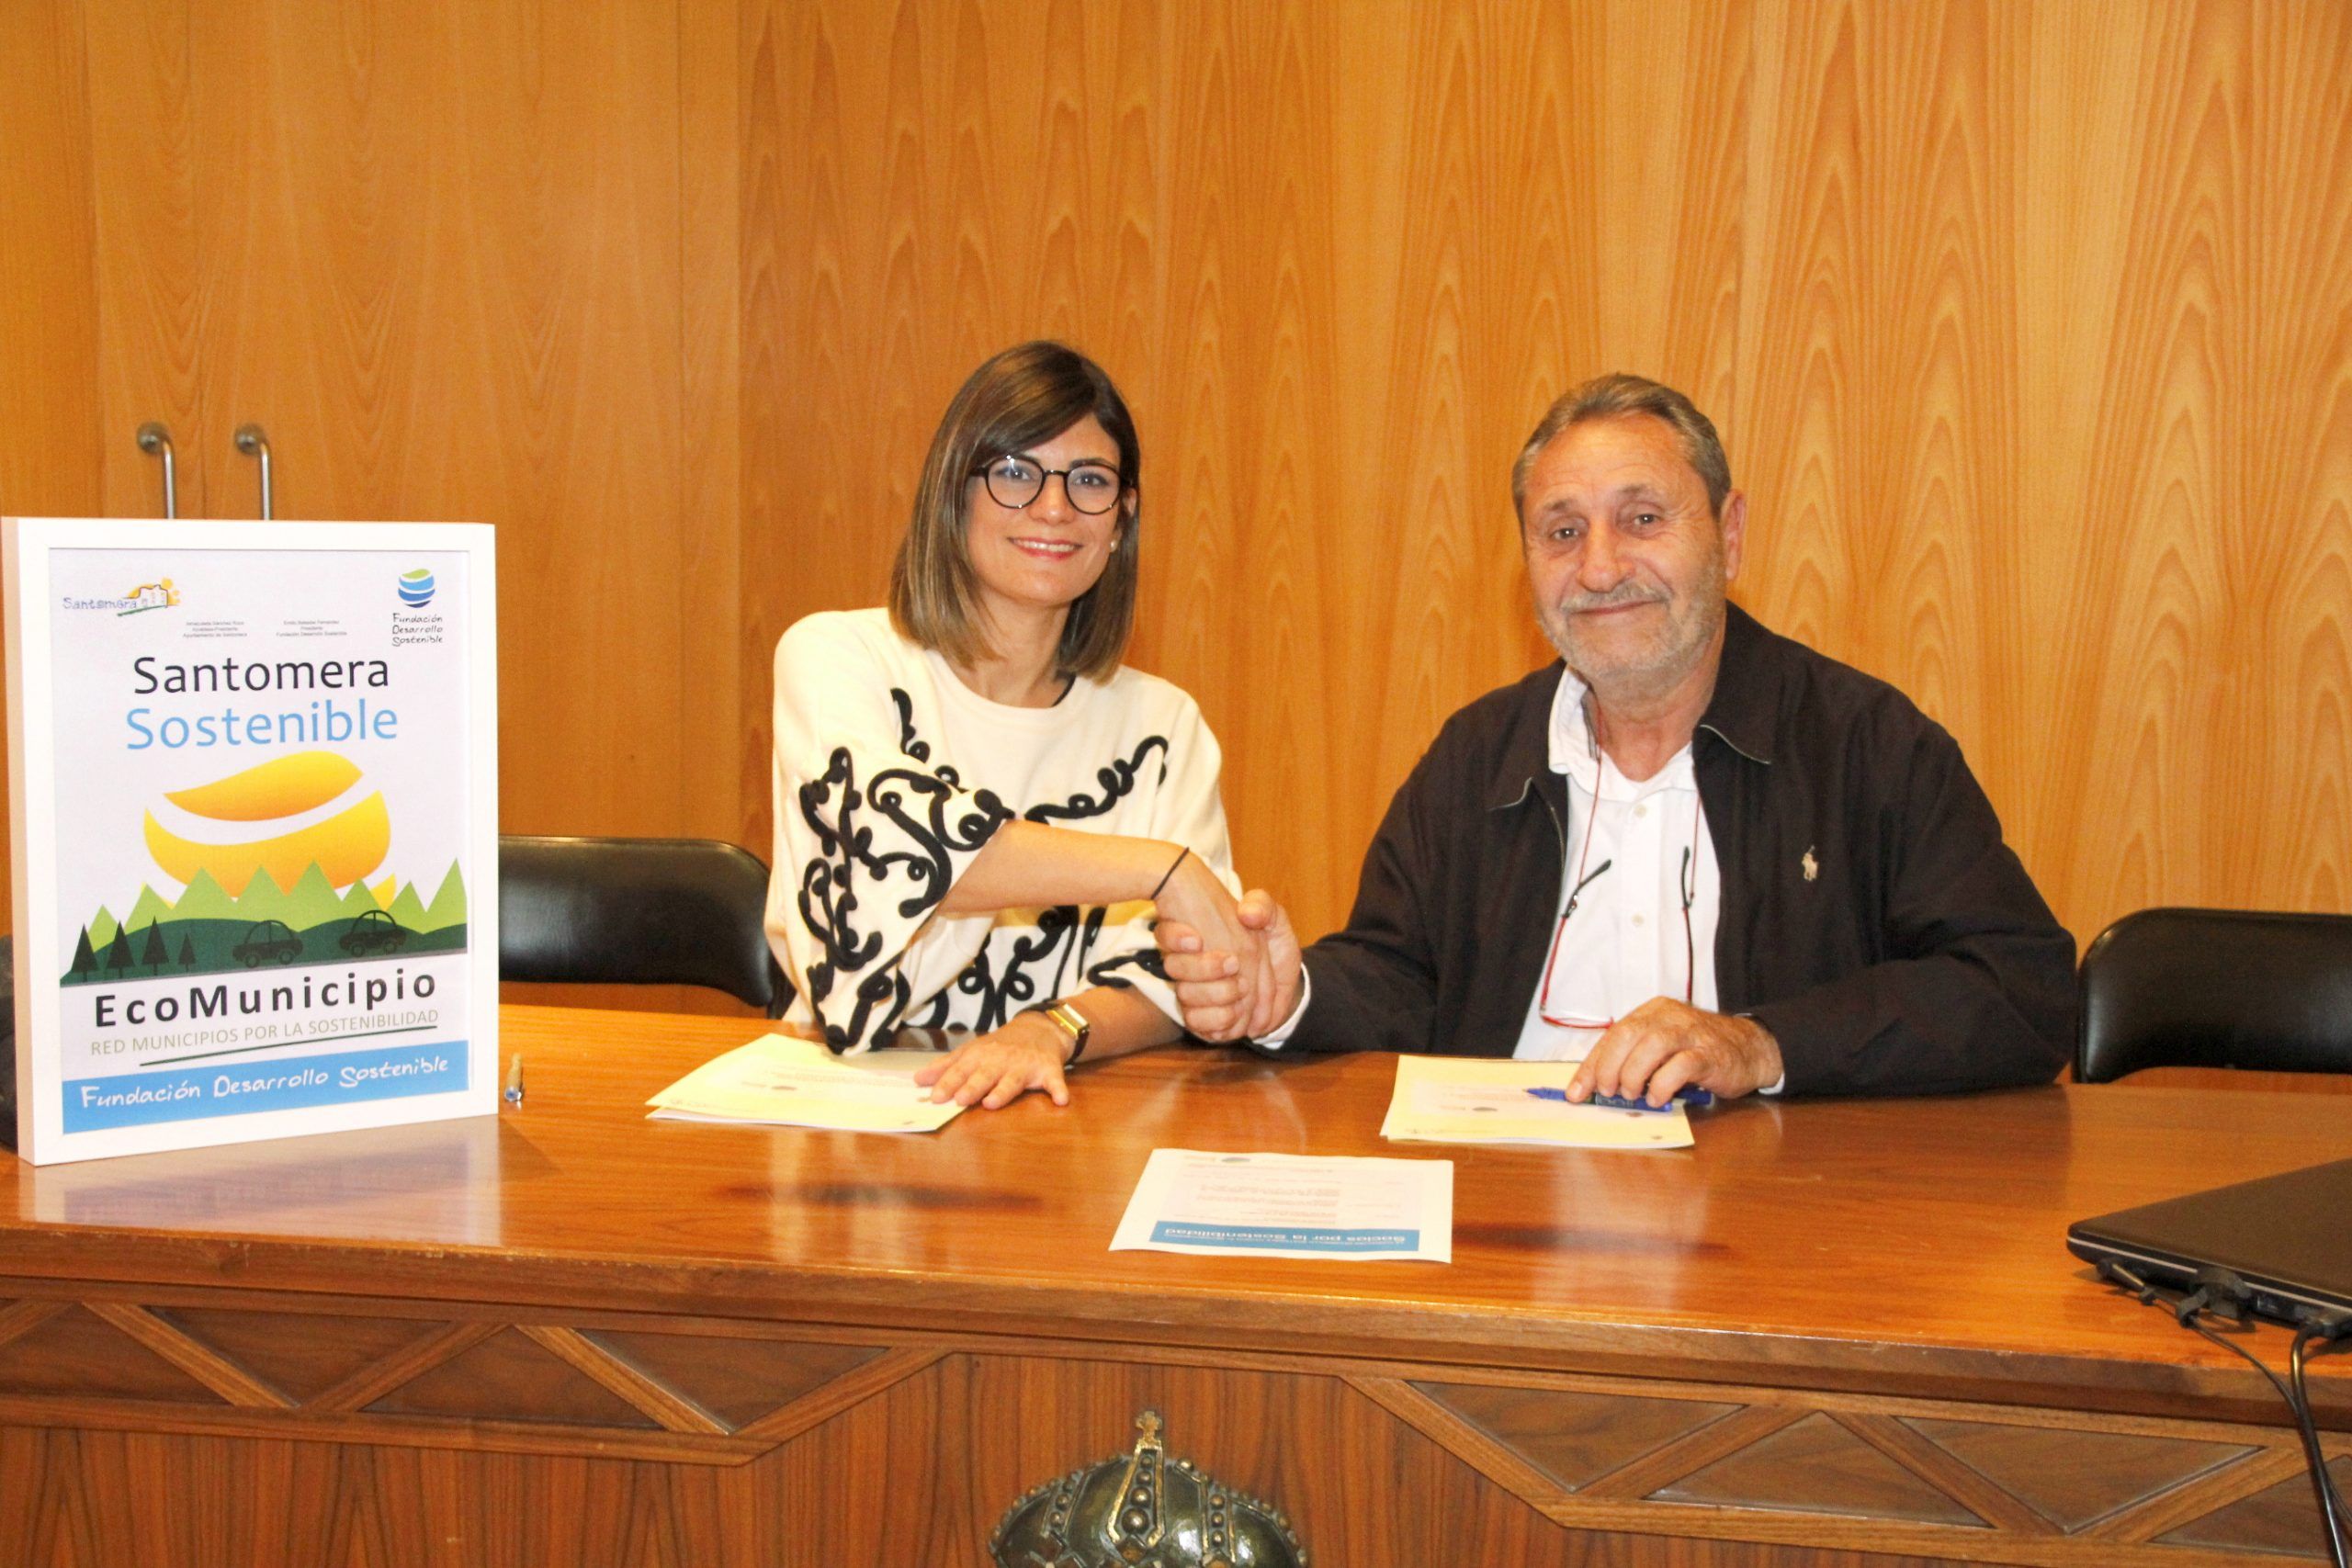 santomera1 - El Ayuntamiento de Santomera y la Fundación Desarrollo Sostenible firman un convenio para impulsar el desarrollo sostenible y reducir las emisiones de CO2 en Santomera